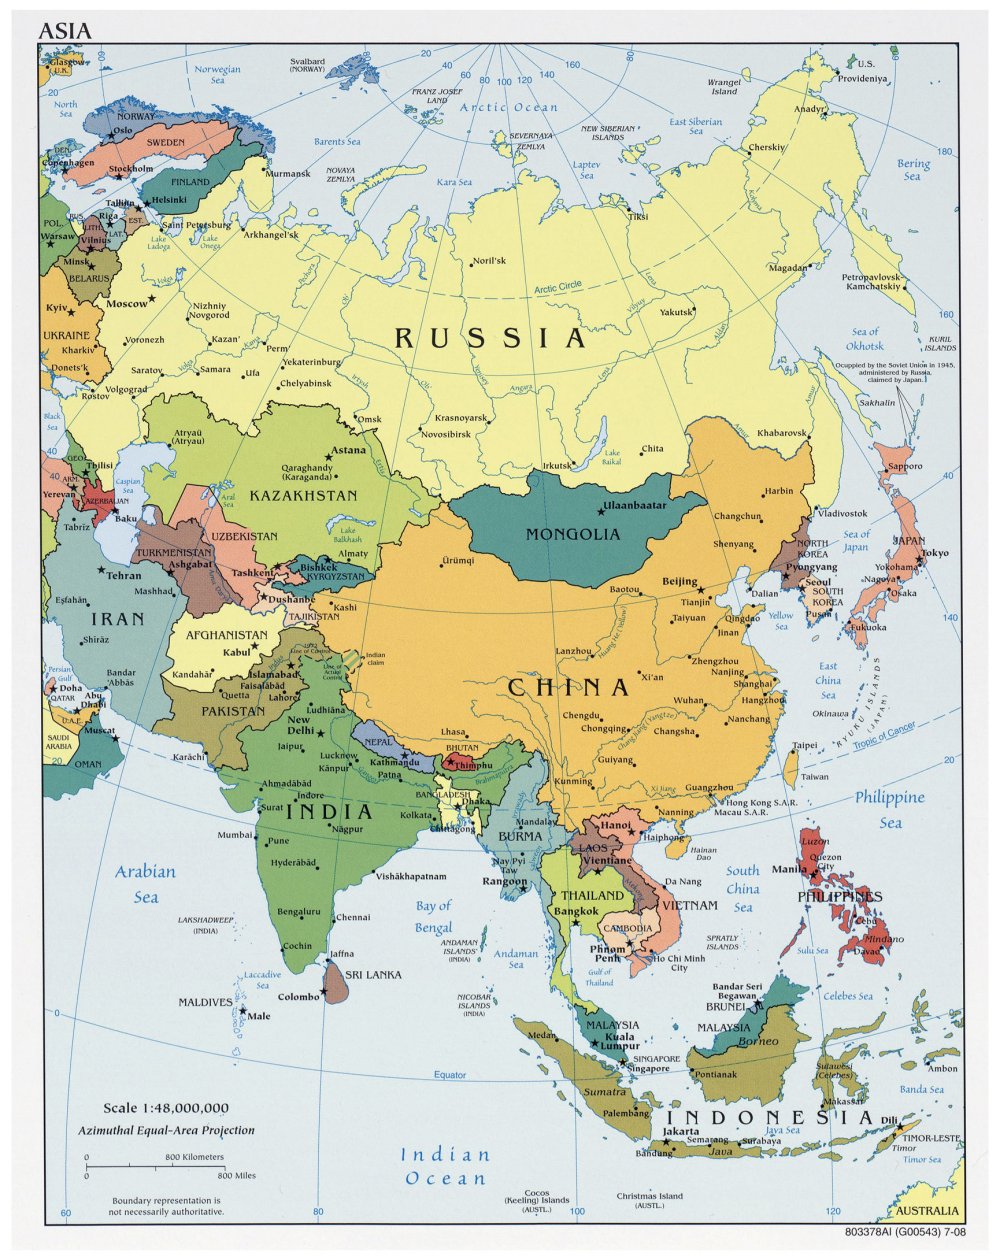 Cập nhật bản đồ Châu Á: Châu Á hằng ngày đang trải qua những thay đổi về địa lý, kinh tế và xã hội. Hãy cập nhật những thay đổi mới nhất trên bản đồ Châu Á năm 2024 để có thể đảm bảo kế hoạch du lịch và kinh doanh của bạn.